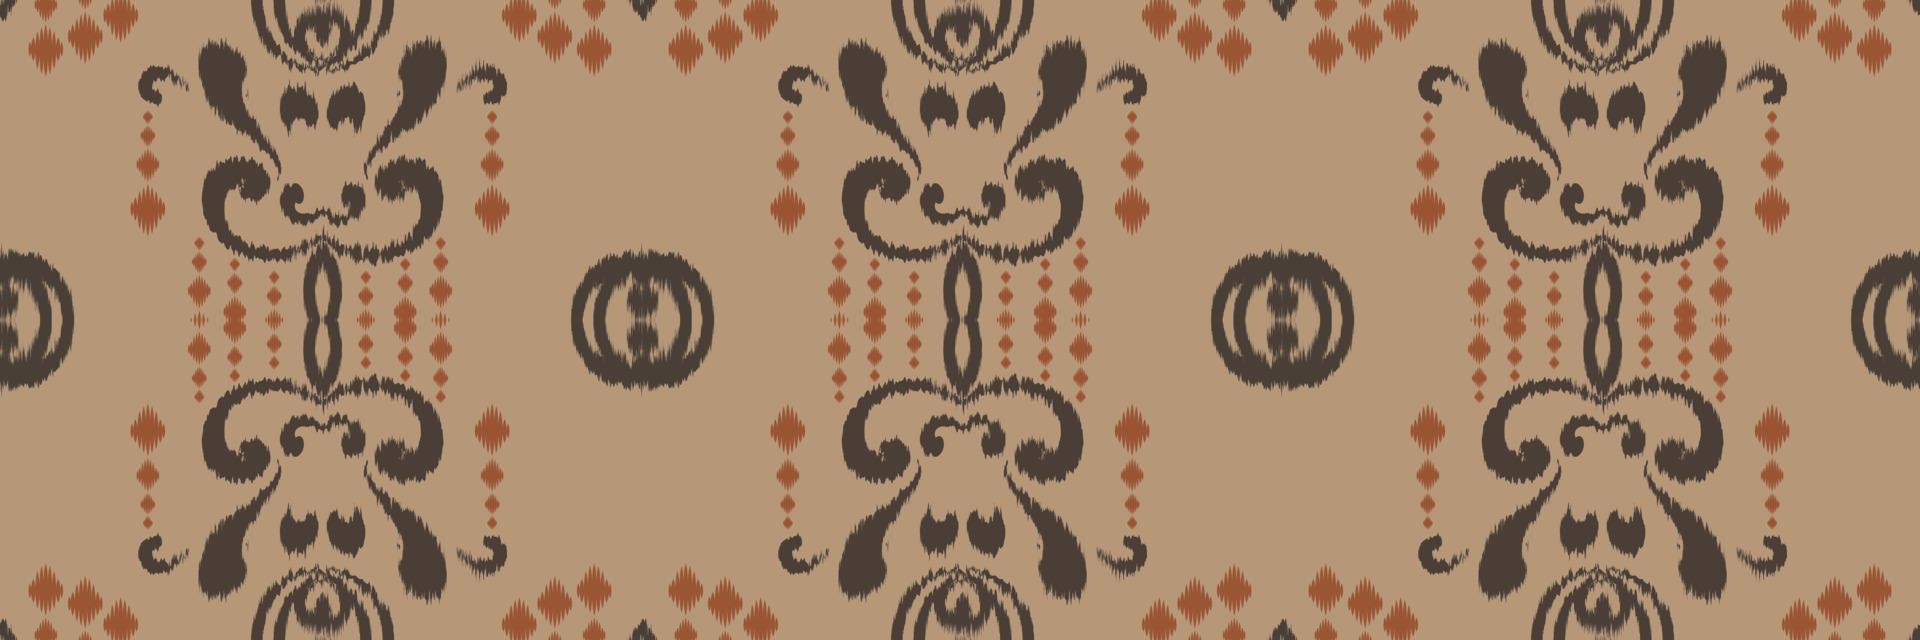 motiv ikat blomma batik textil- sömlös mönster digital vektor design för skriva ut saree kurti borneo tyg gräns borsta symboler färgrutor bomull